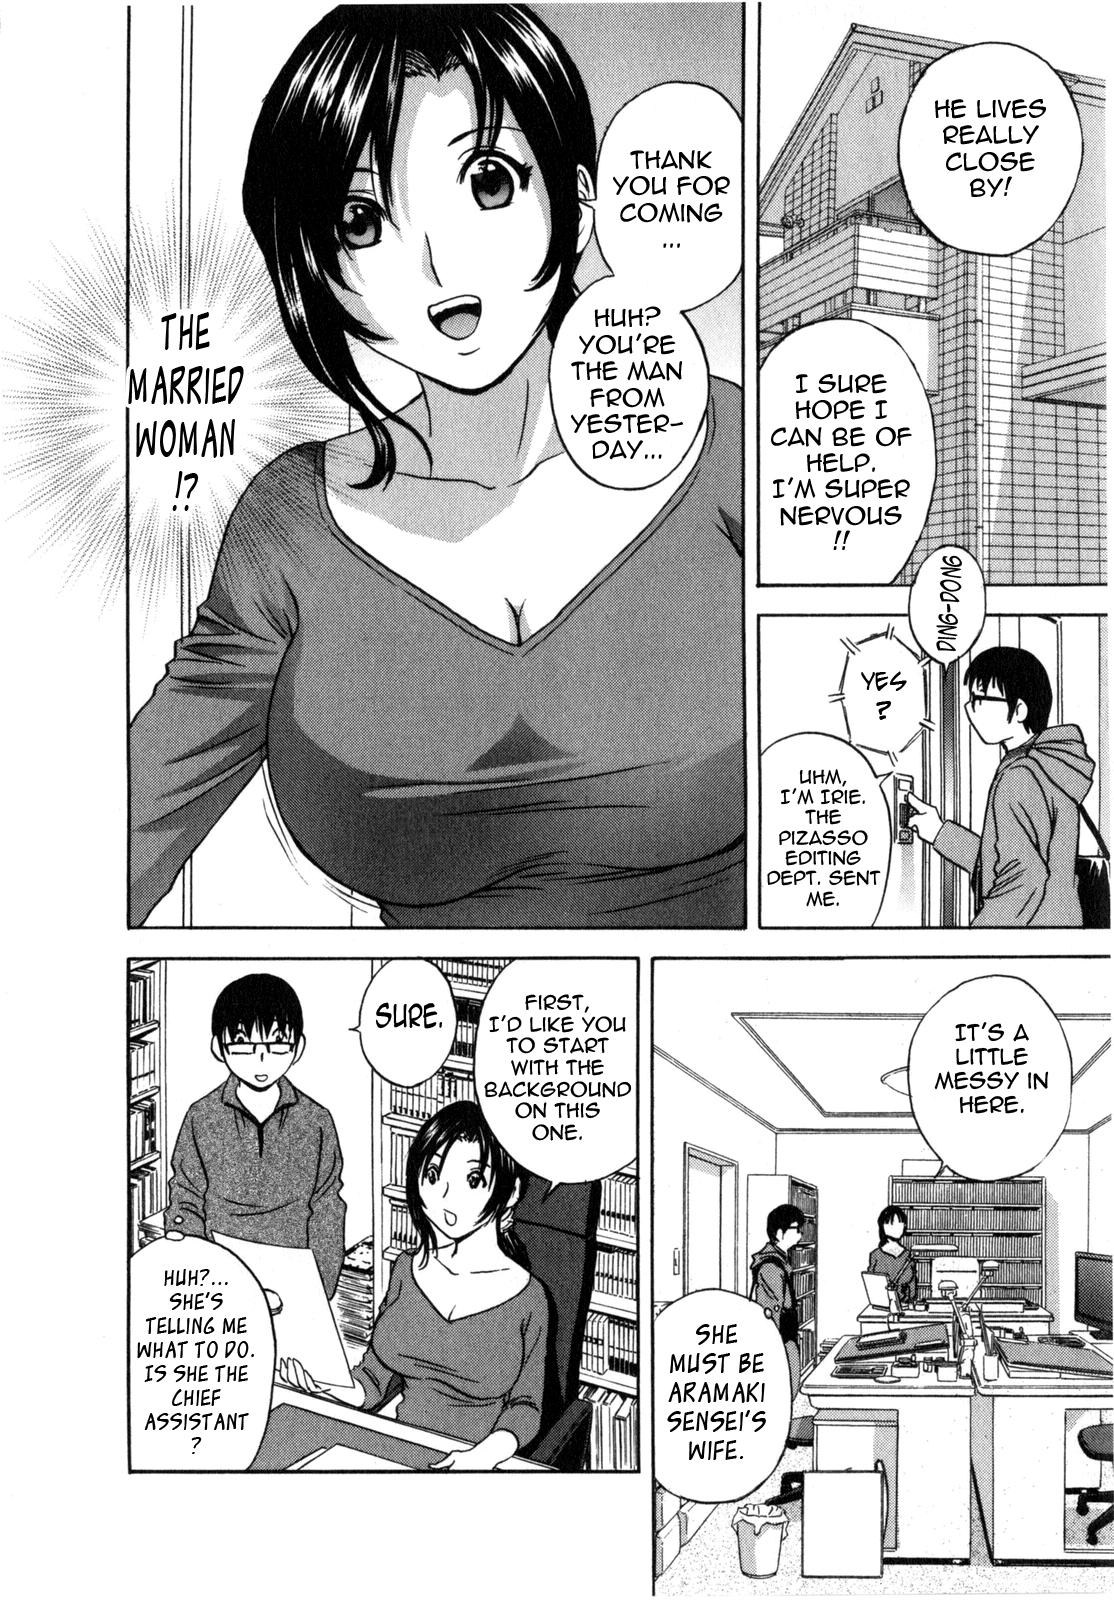 Manga no youna Hitozuma to no Hibi - Days with Married Women such as Comics. 12